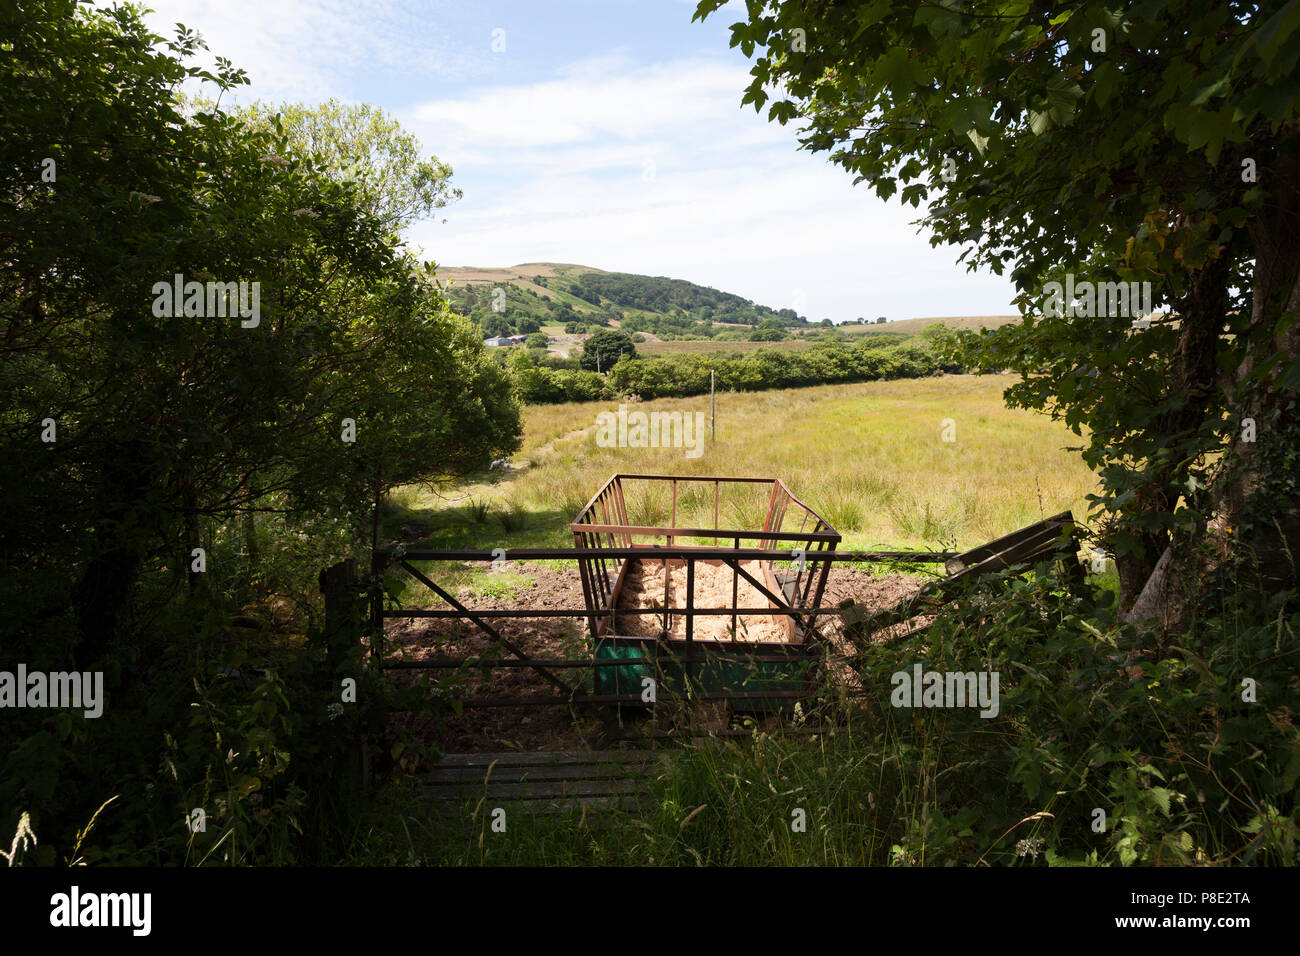 Farm trailer in field, Llanllyfni, Gwynedd Stock Photo